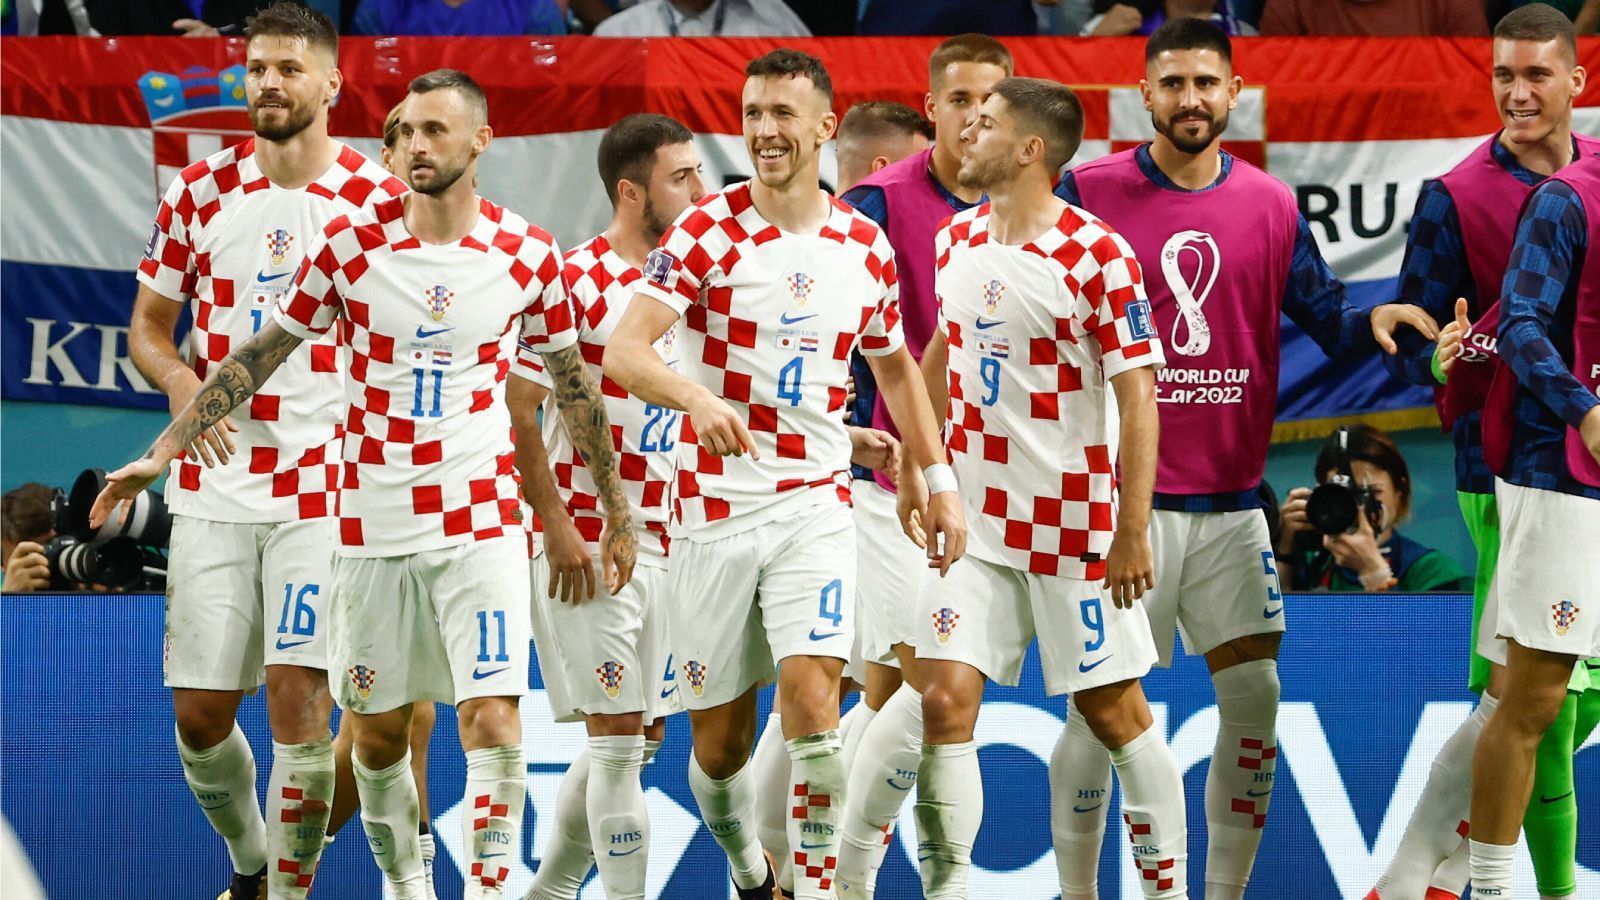 
                <strong>Platz 8: Kroatien</strong><br>
                Es ist nicht so, dass Kroatien im bisherigen Turnierverlauf enttäuscht hätte, sie waren nur einfach am wenigsten überzeugend. In der Gruppe F mit Marokko, Belgien und Kanada sind sie nur haarscharf dem Ausscheiden entkommen. Hätte Romelu Lukaku für Belgien beim 0:0 am letzten Spieltag eine der drei XXL-Chancen genutzt, würden die Kroaten nun schon wieder im Flieger nach Hause sitzen. Aber da ist viel Konjunktiv dabei. Fakt ist: Die Kroaten setzten sich in der Gruppe genau so durch wie im Achtelfinale gegen Japan. Allerdings ist genau so Fakt: Kroatien gewann auf dem Papier erst ein einziges von vier Spielen. Um im Viertelfinale gegen Brasilien zu bestehen, muss mehr kommen.
              